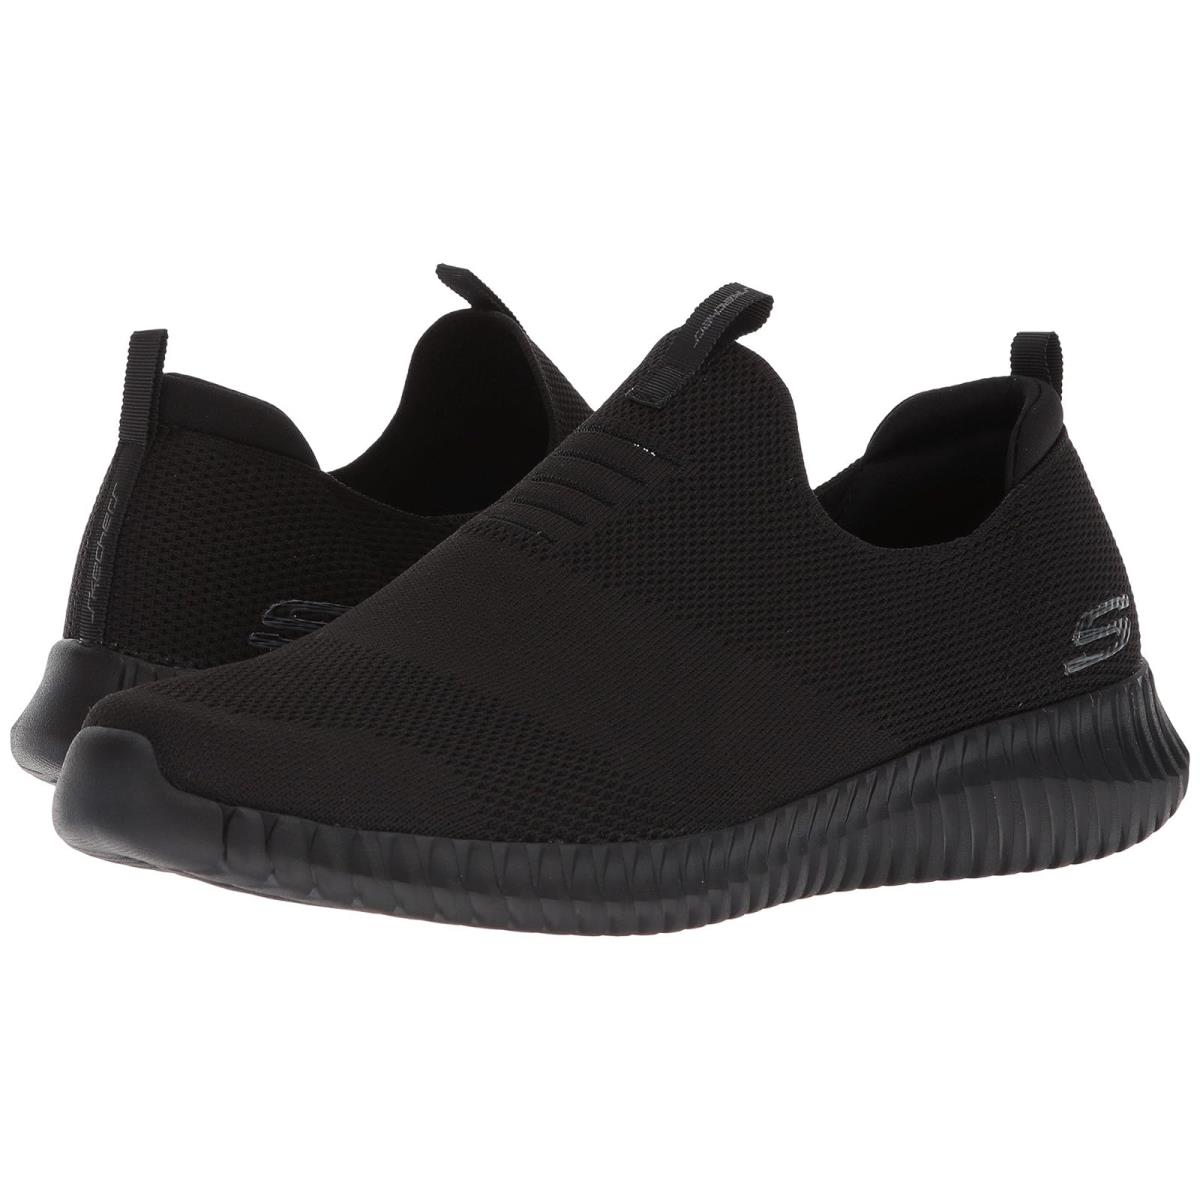 Man`s Sneakers Athletic Shoes Skechers Elite Flex - Wasik Black